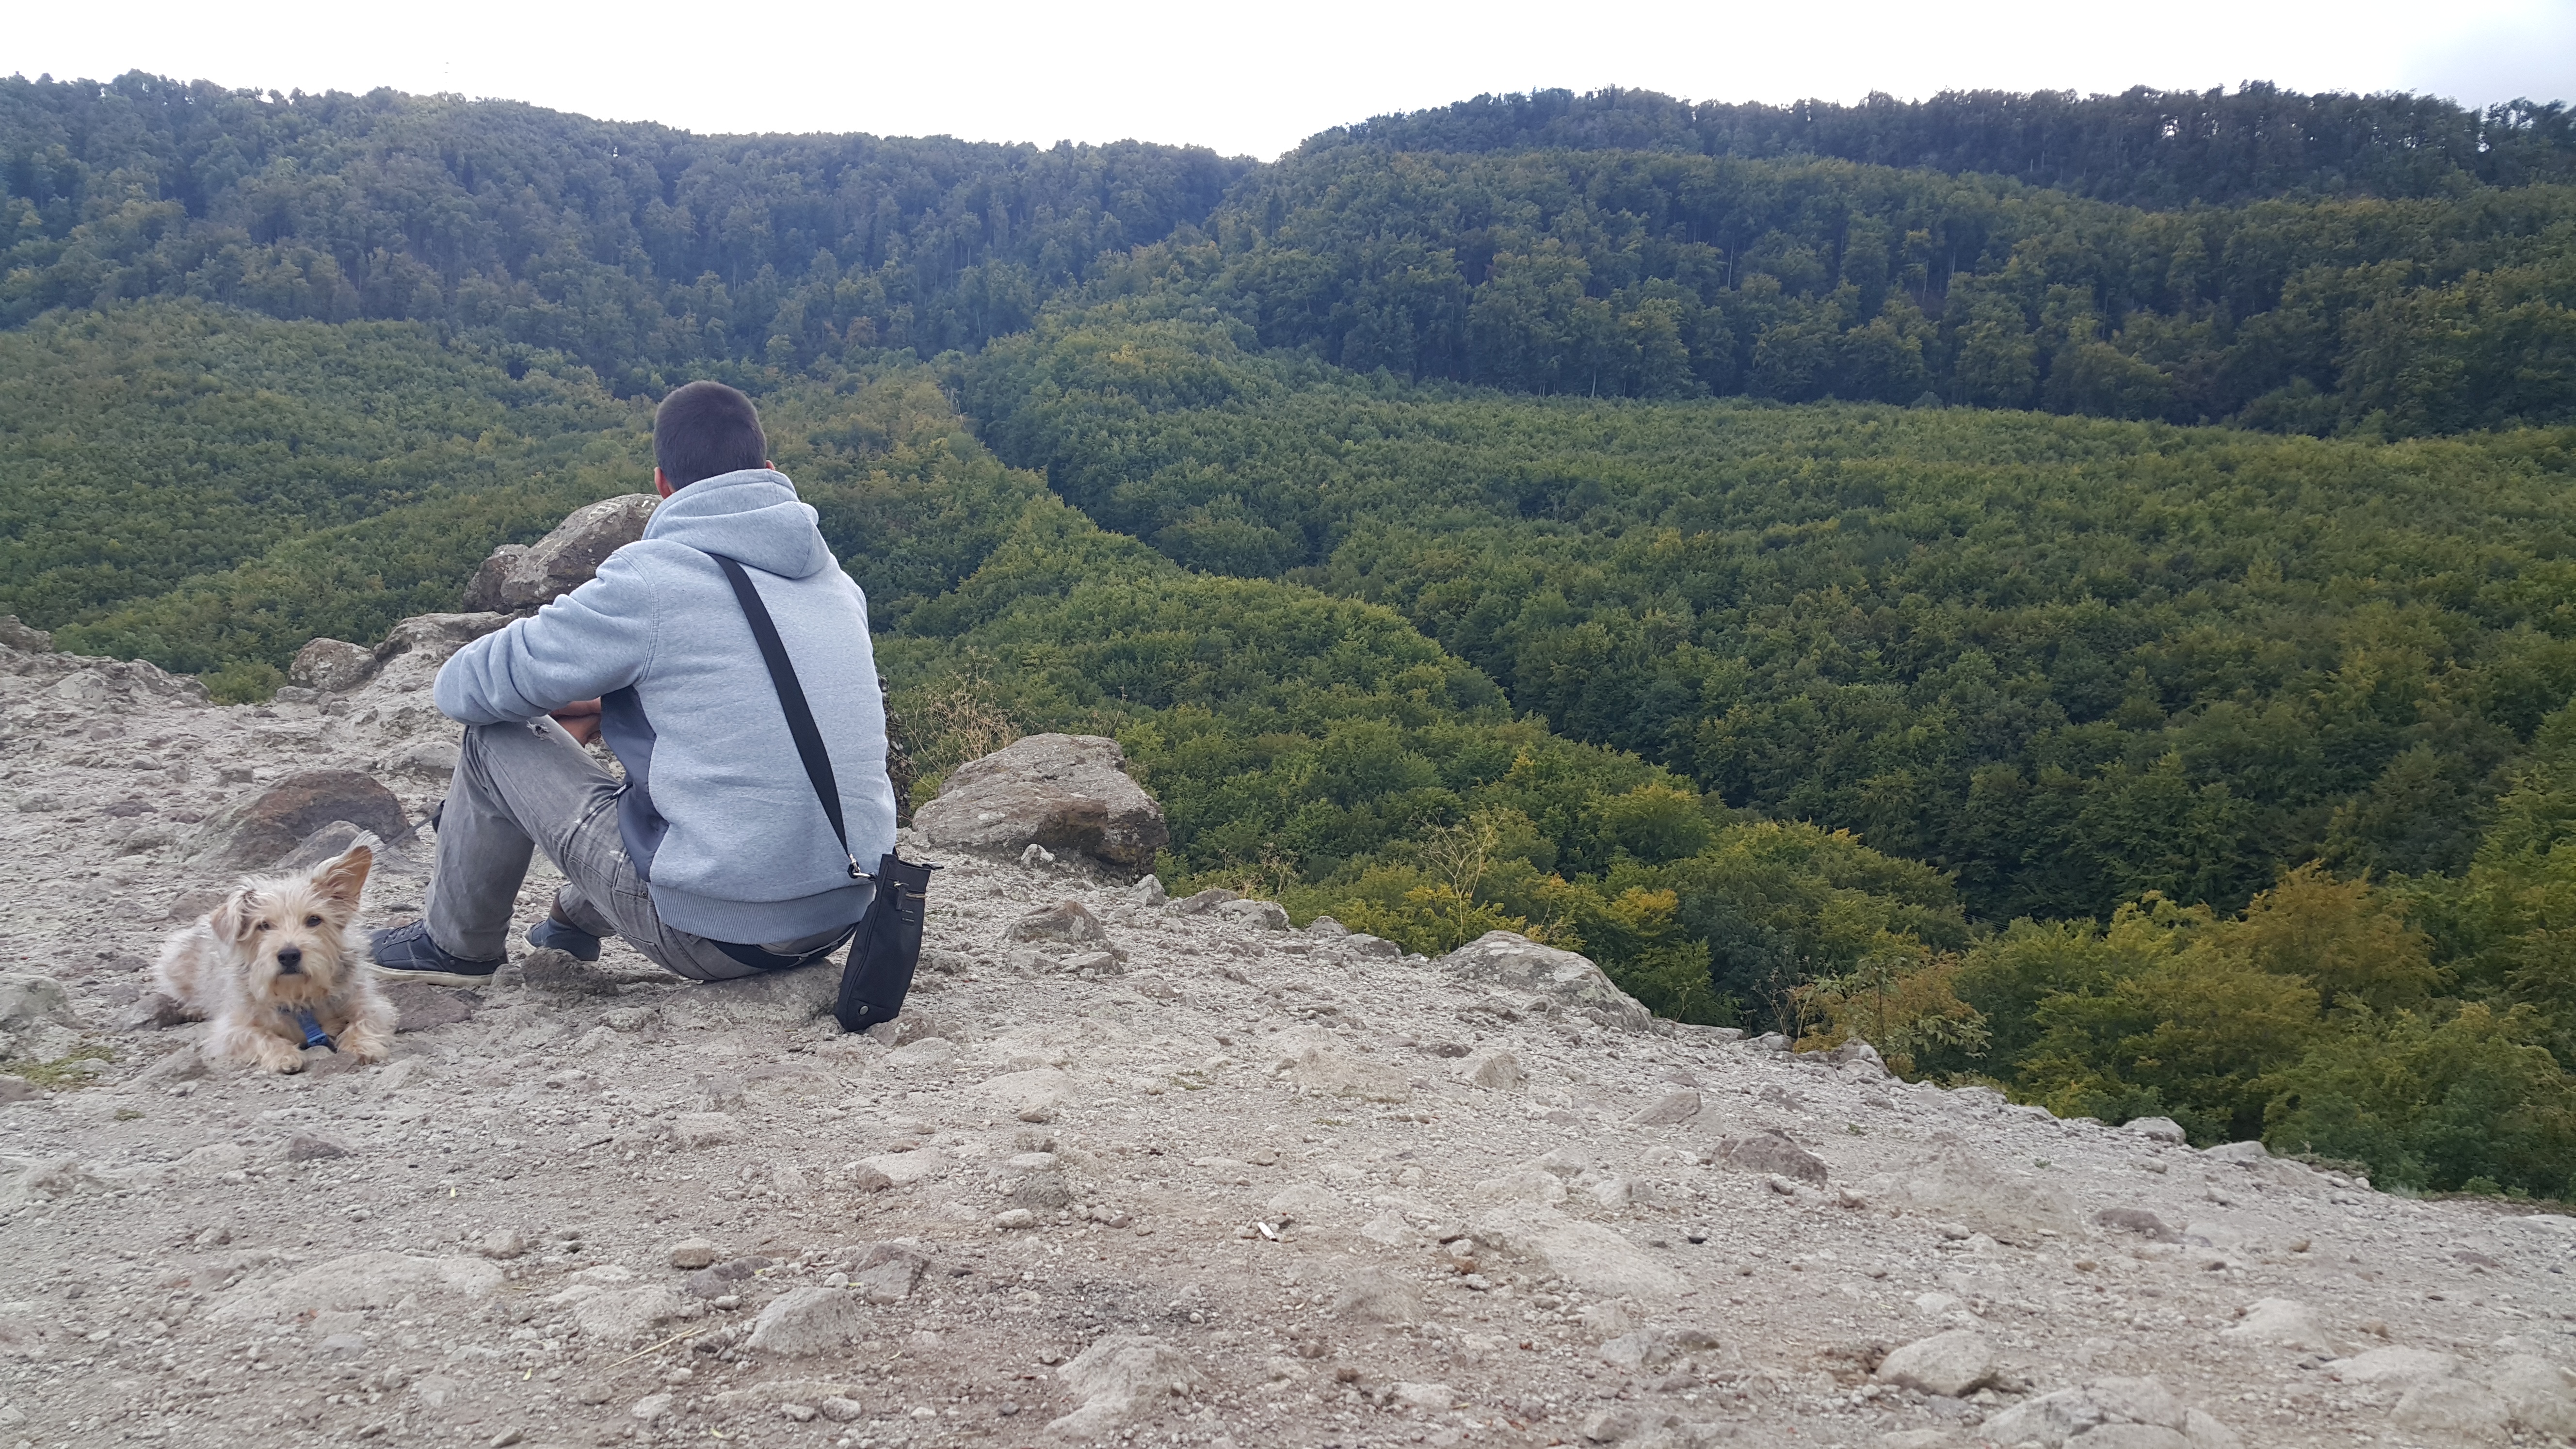 A ferenczy-szikla a Pilisben a Föld szívcsakrája